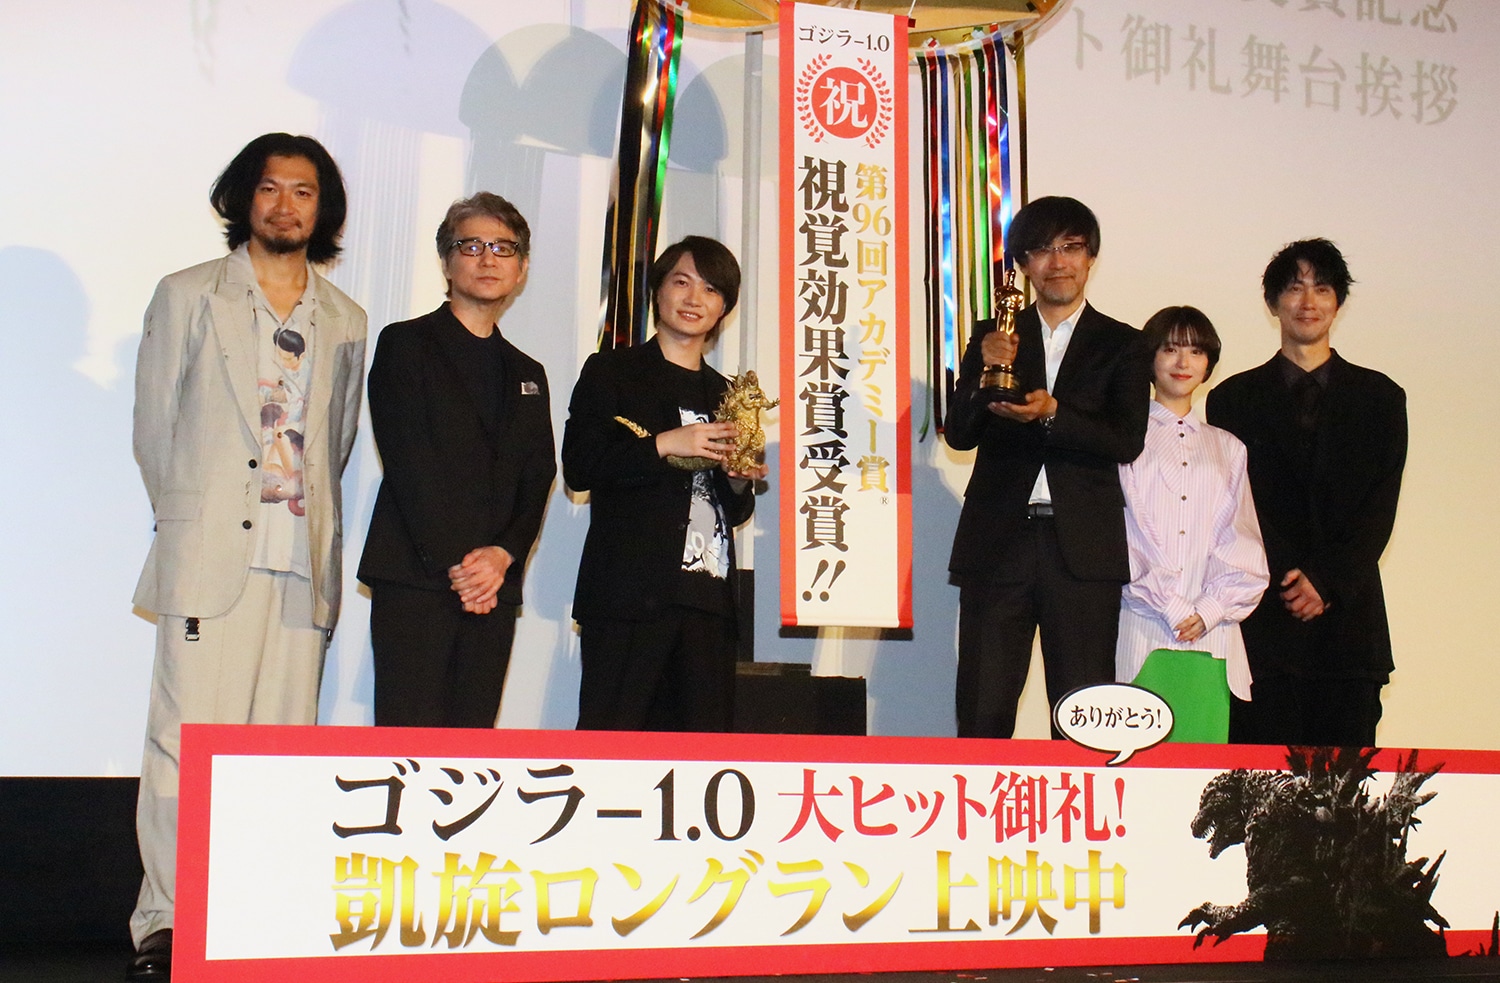 Godzilla-1.0 academy awards celebration stage greeting